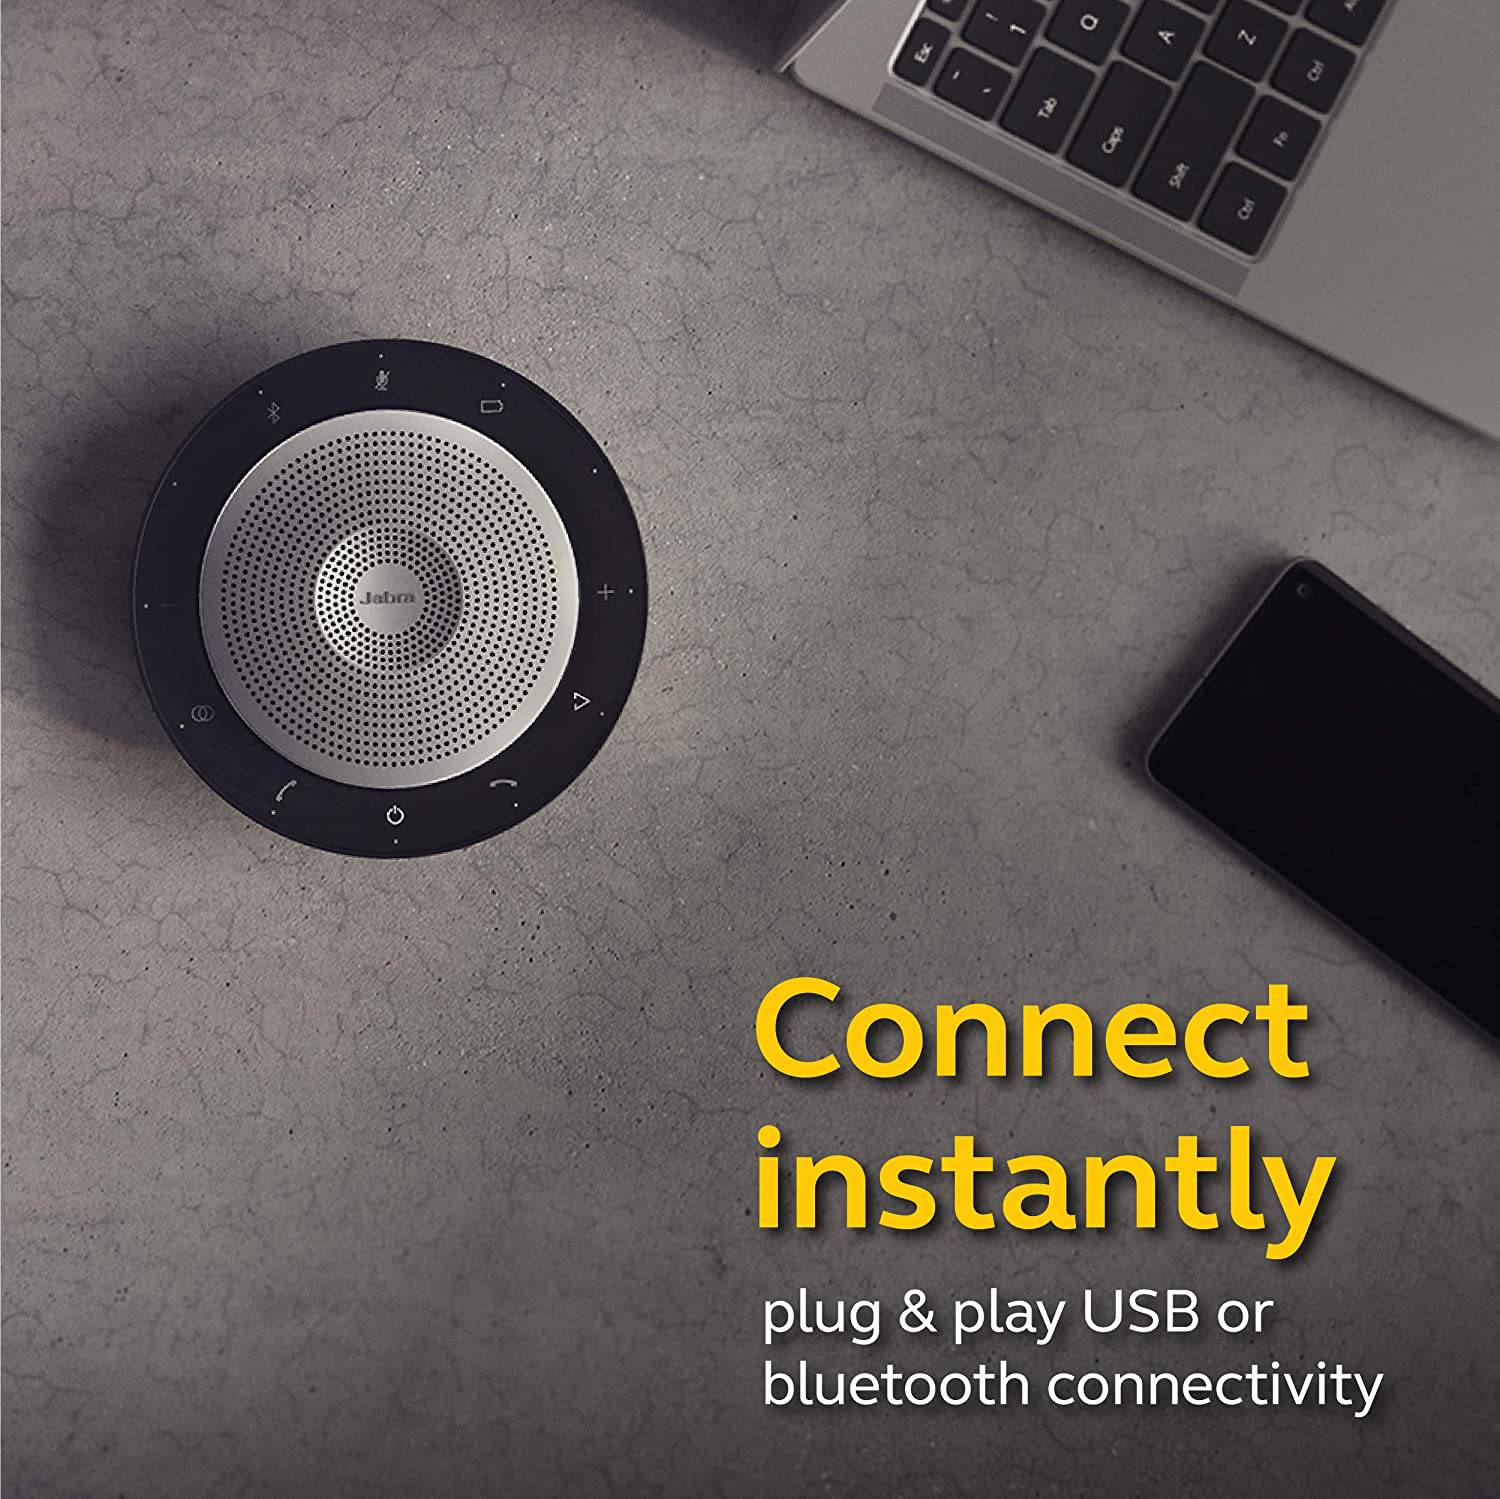 Jabra Speak 750 MS Bluetooth + USB Conference Speakerphone 7700 